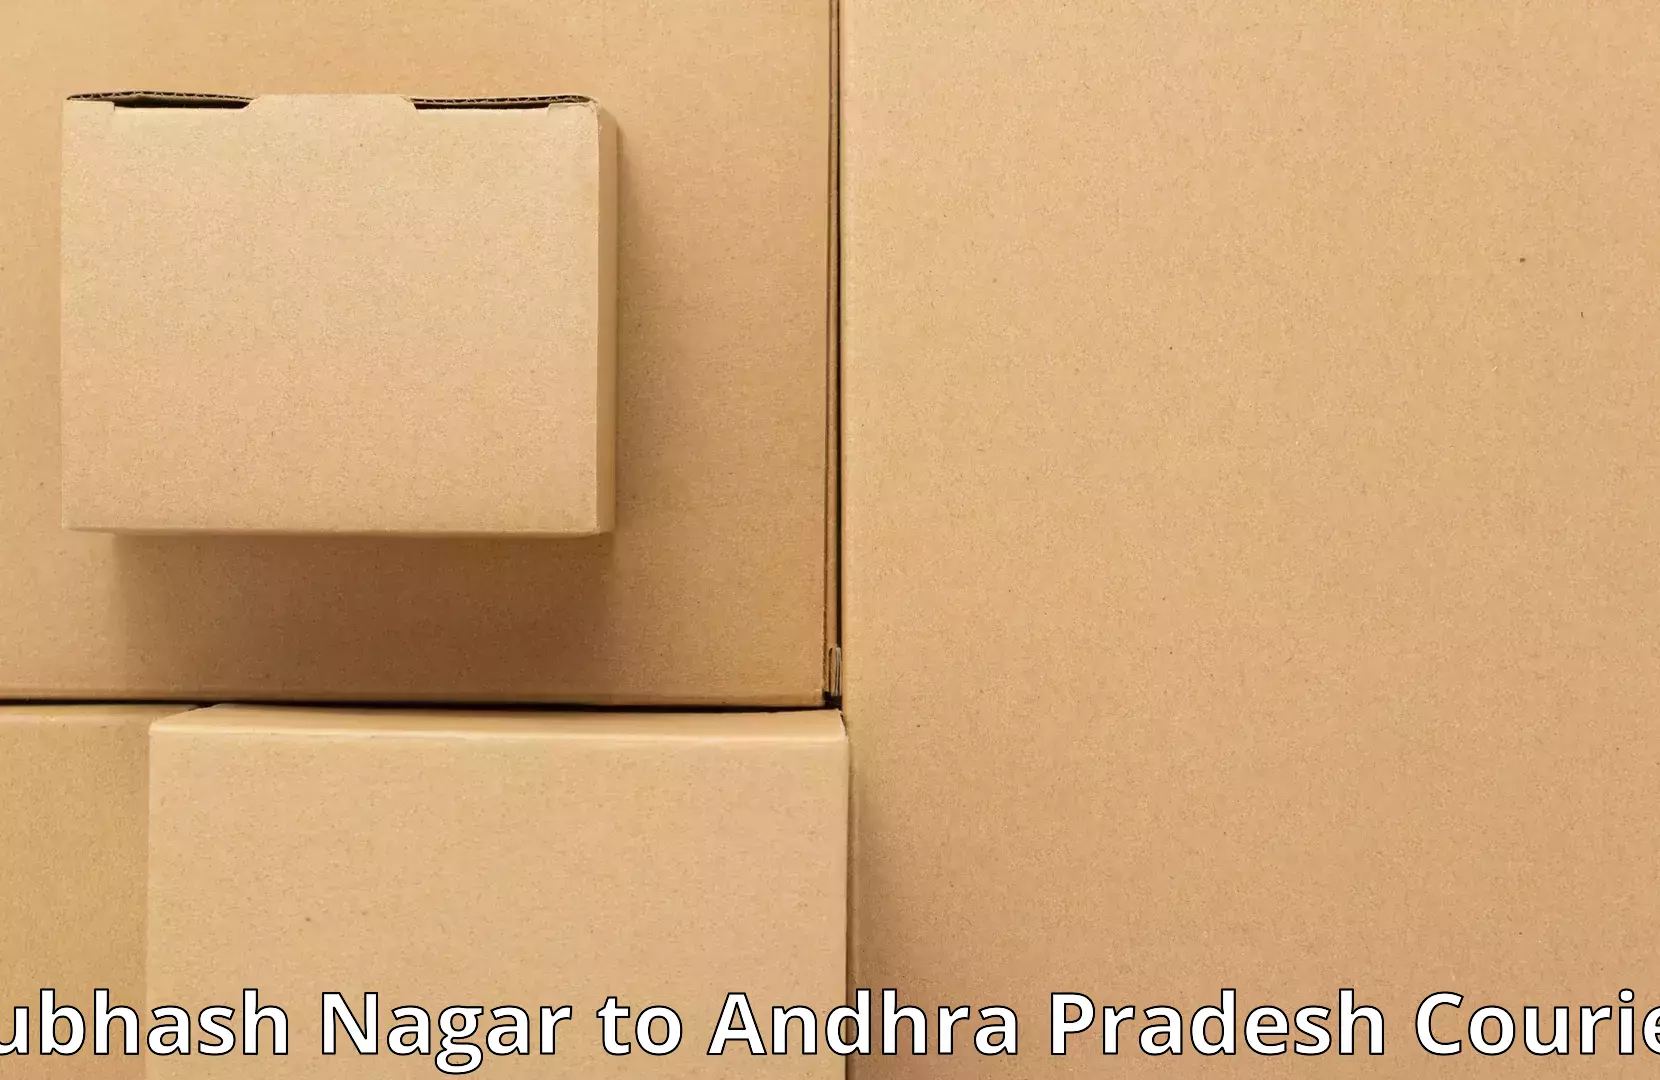 Furniture transport experts Subhash Nagar to Andhra Pradesh